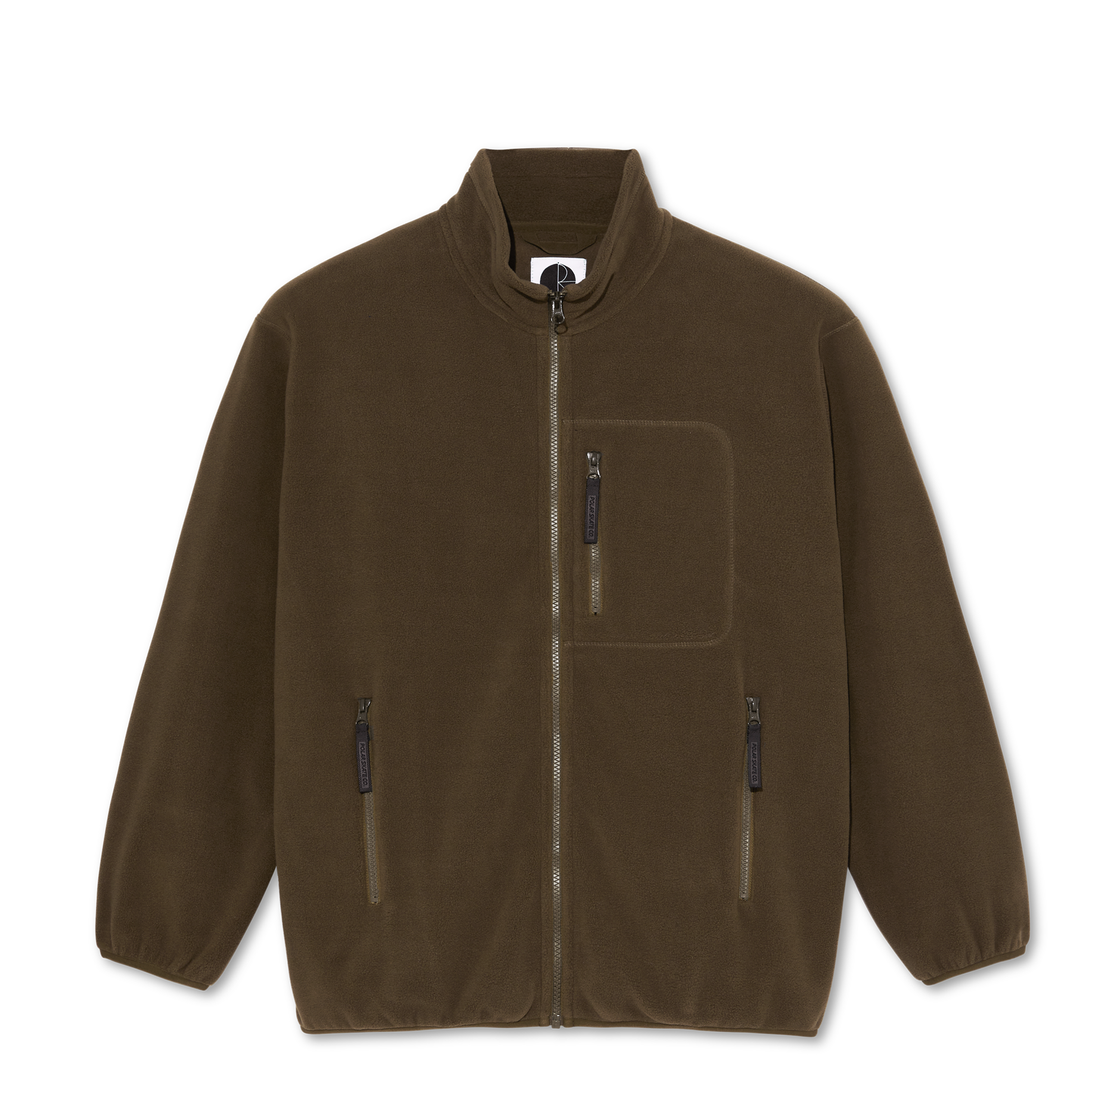 Polar - Basic Fleece Jacket - Brown